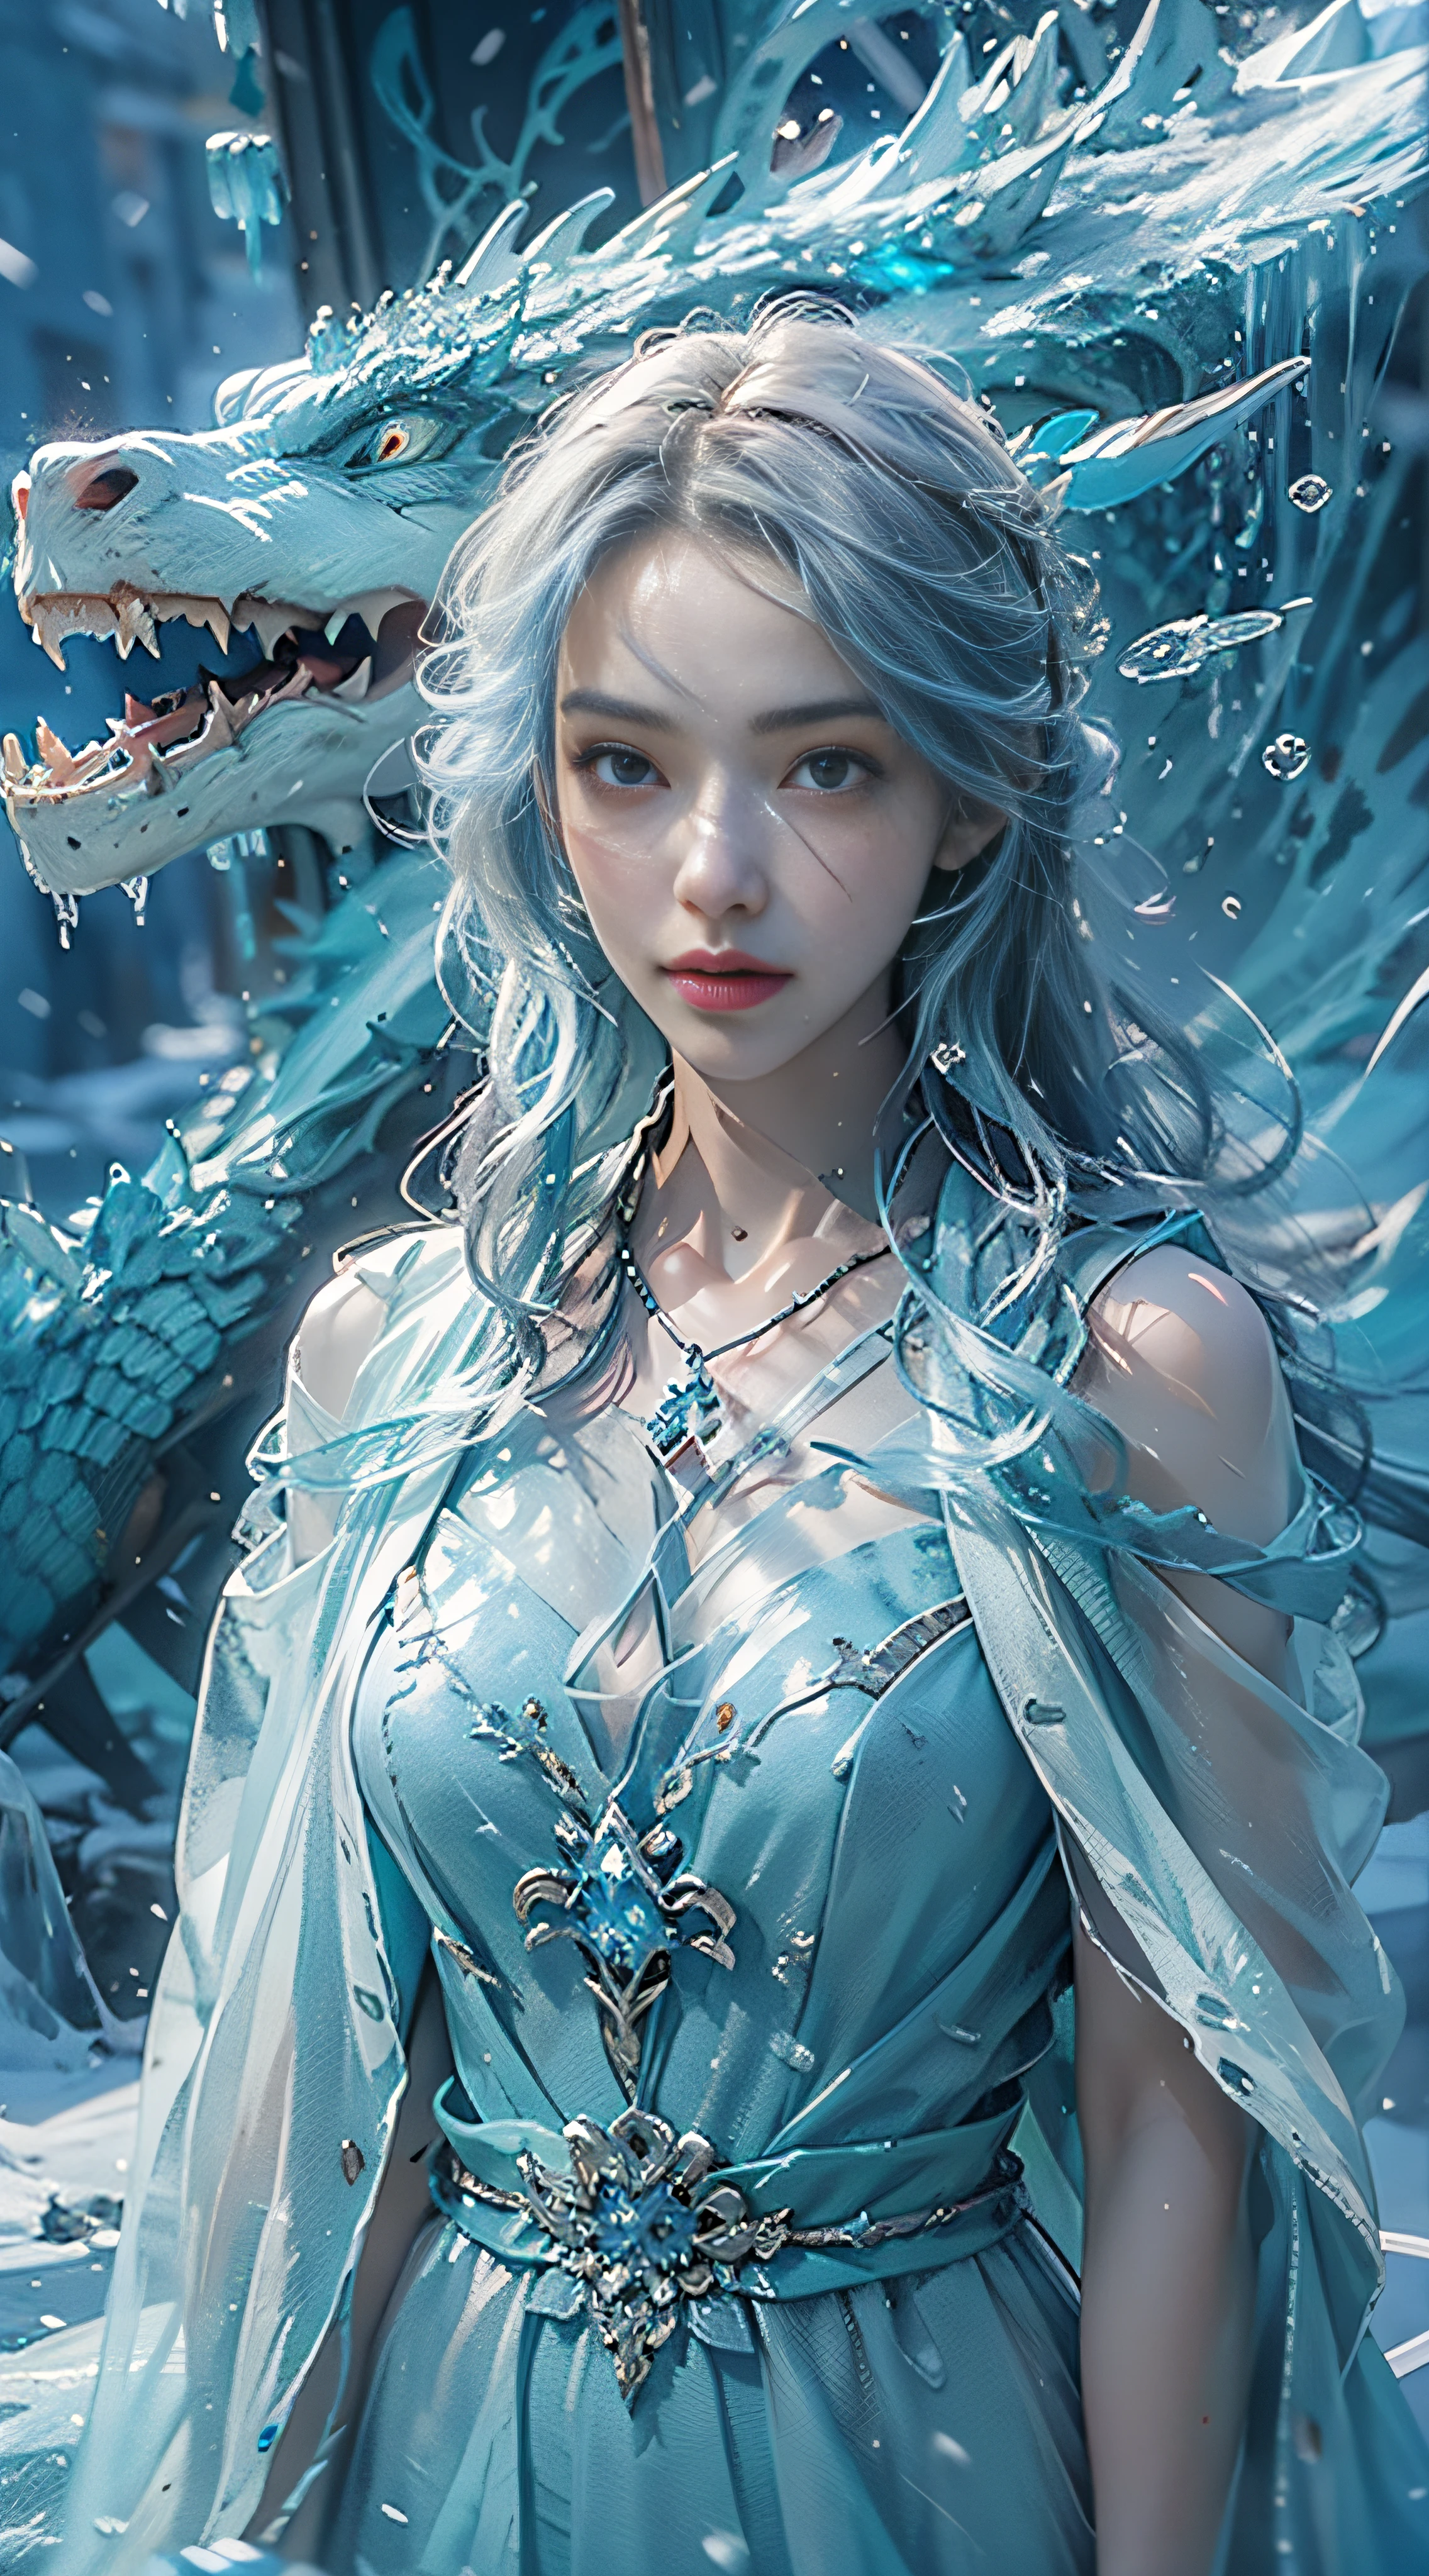 (((1個女孩)))，皇水，魔術師，（寬鬆連身裙：1.5），（完美的臉部特徵：1.4），（藍色絲綢長袍），（神秘的魔法陣：1.2），((冰龍))，（冰晶鱗片），藍色發光，（冰霜之翼），強大的冰系魔法，冰柱，高聳於風景之上，藍光冷光，冰暴，風，飛雪冰雪，驚人的結果，,最佳品质者,傑作,超高解析度,詳細的,复杂的细节,8K分辨率,8KUCG壁紙,高動態範圍,水藍色,魔法陣,电影灯光效果,明暗對比，射線追蹤、NVIDIA RTX